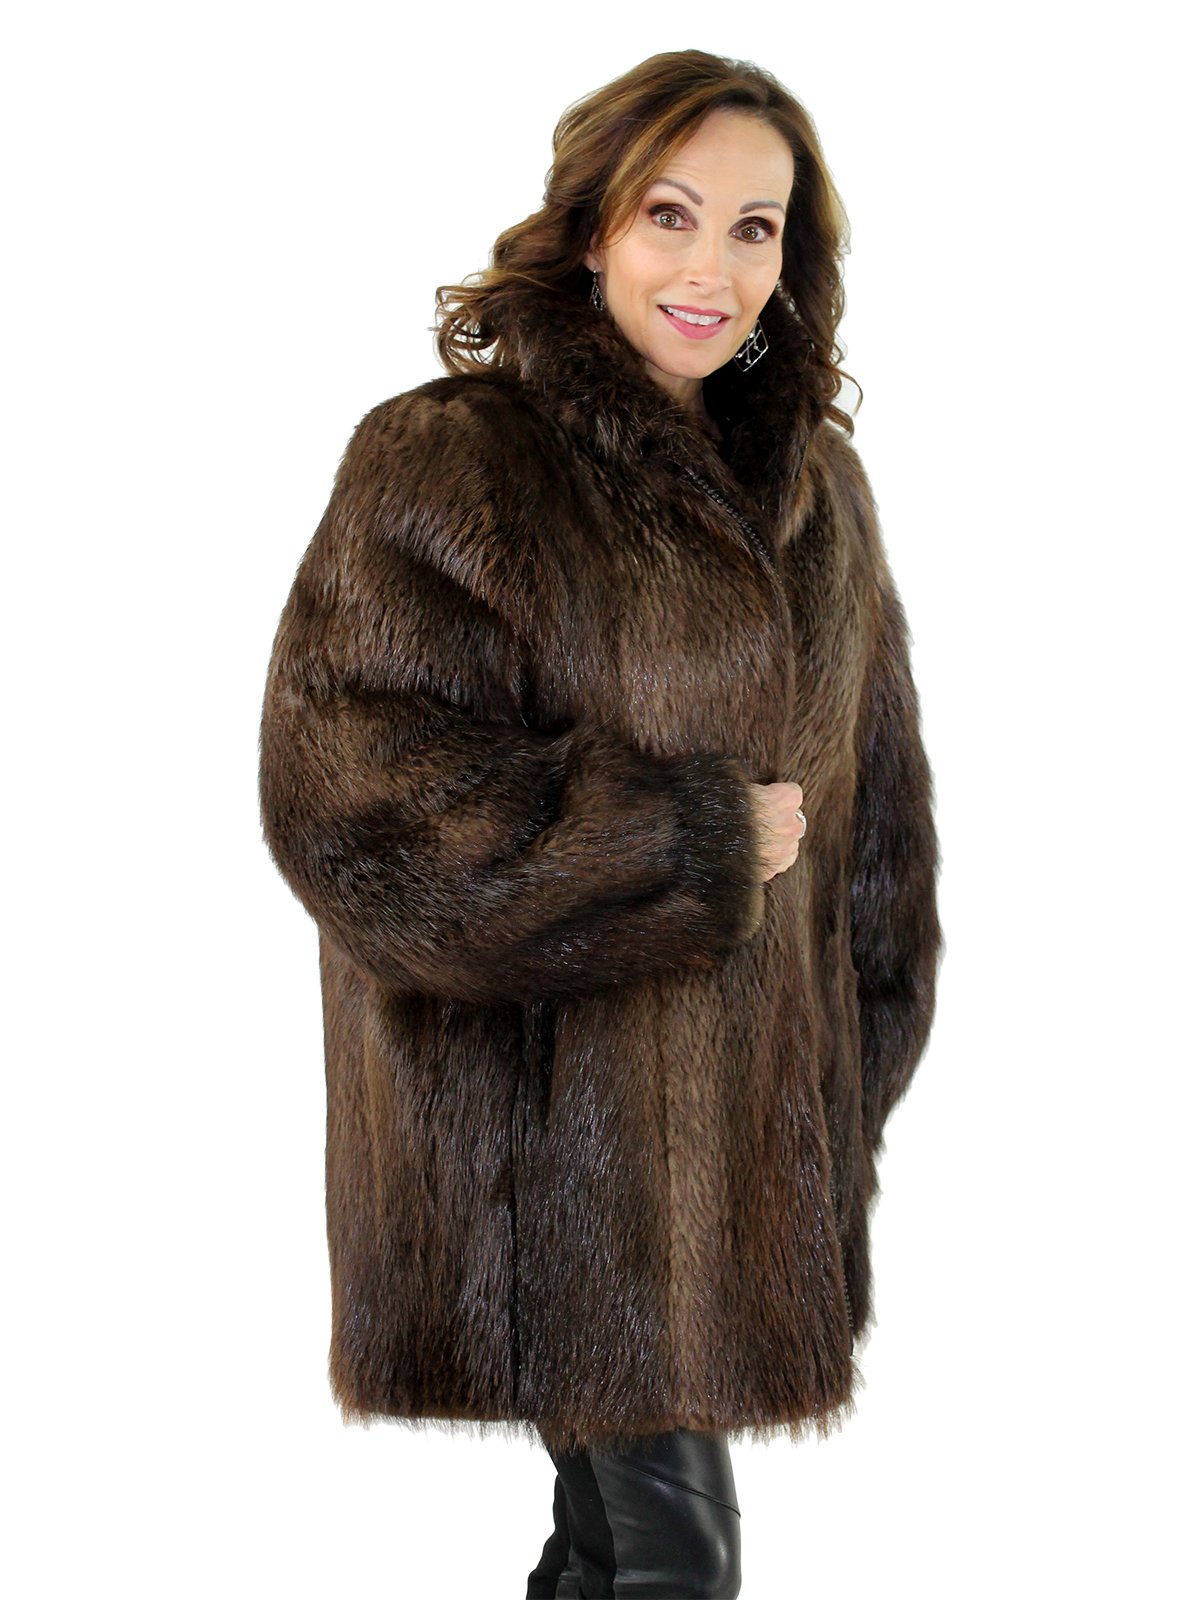 Rosewood Long Hair Beaver Fur Jacket - Women's Fur Jacket - Large ...